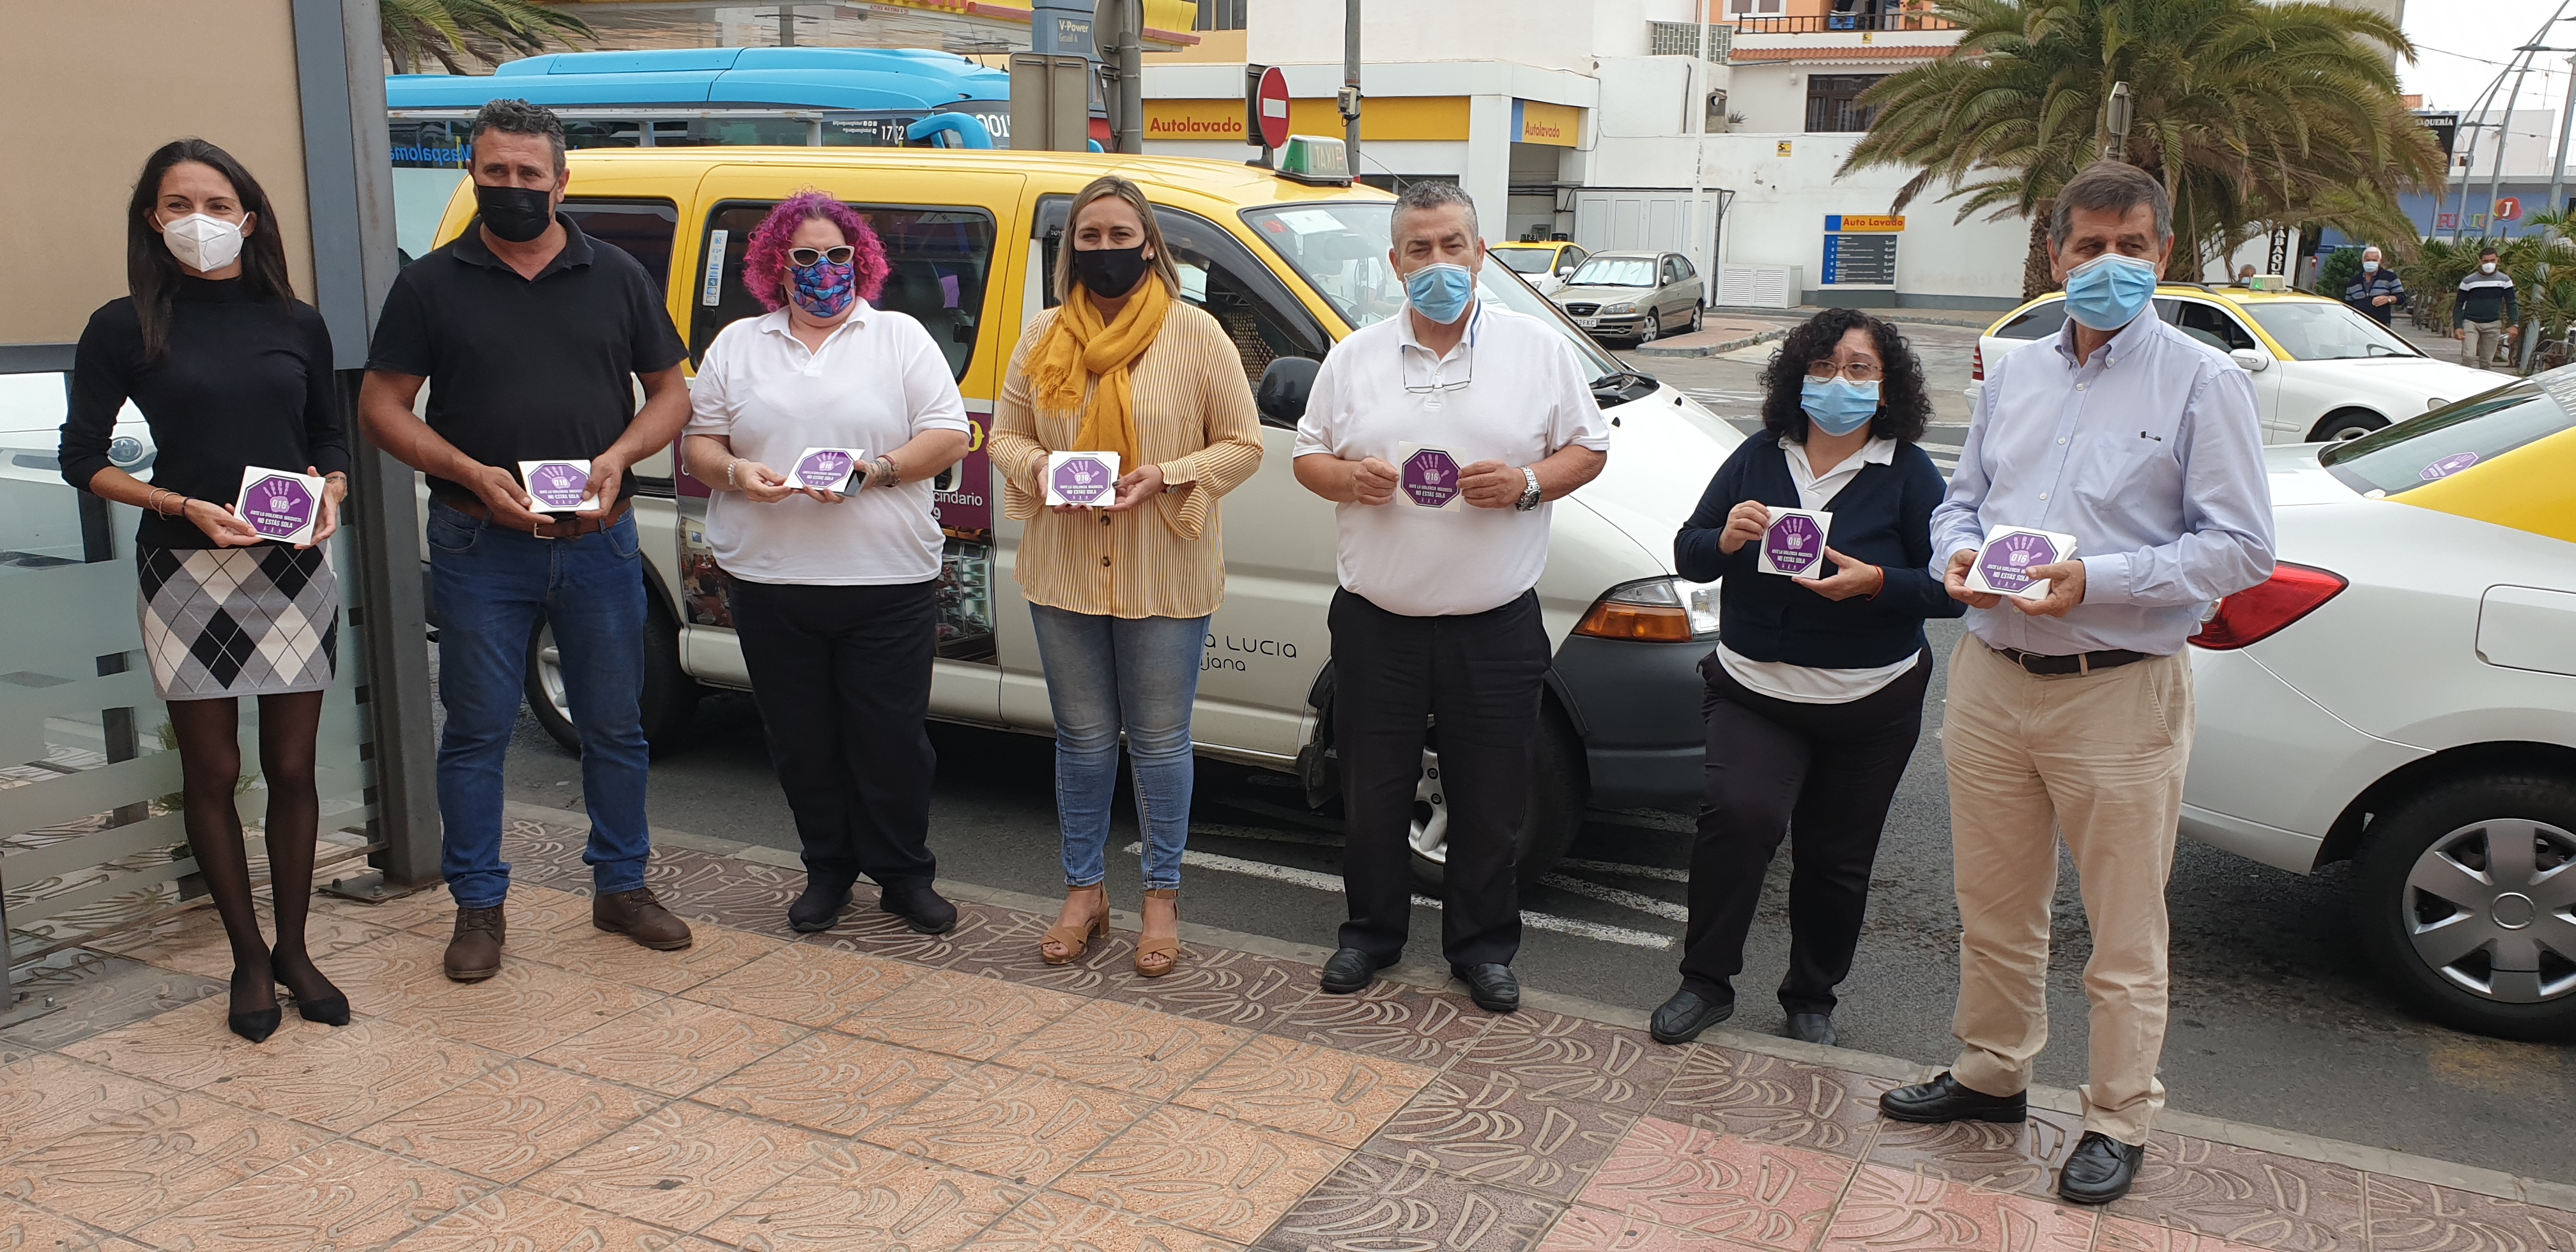  El Ayuntamiento de Santa Lucía y los profesionales del taxi realizan una campaña conjunta de prevención de la violencia machista 